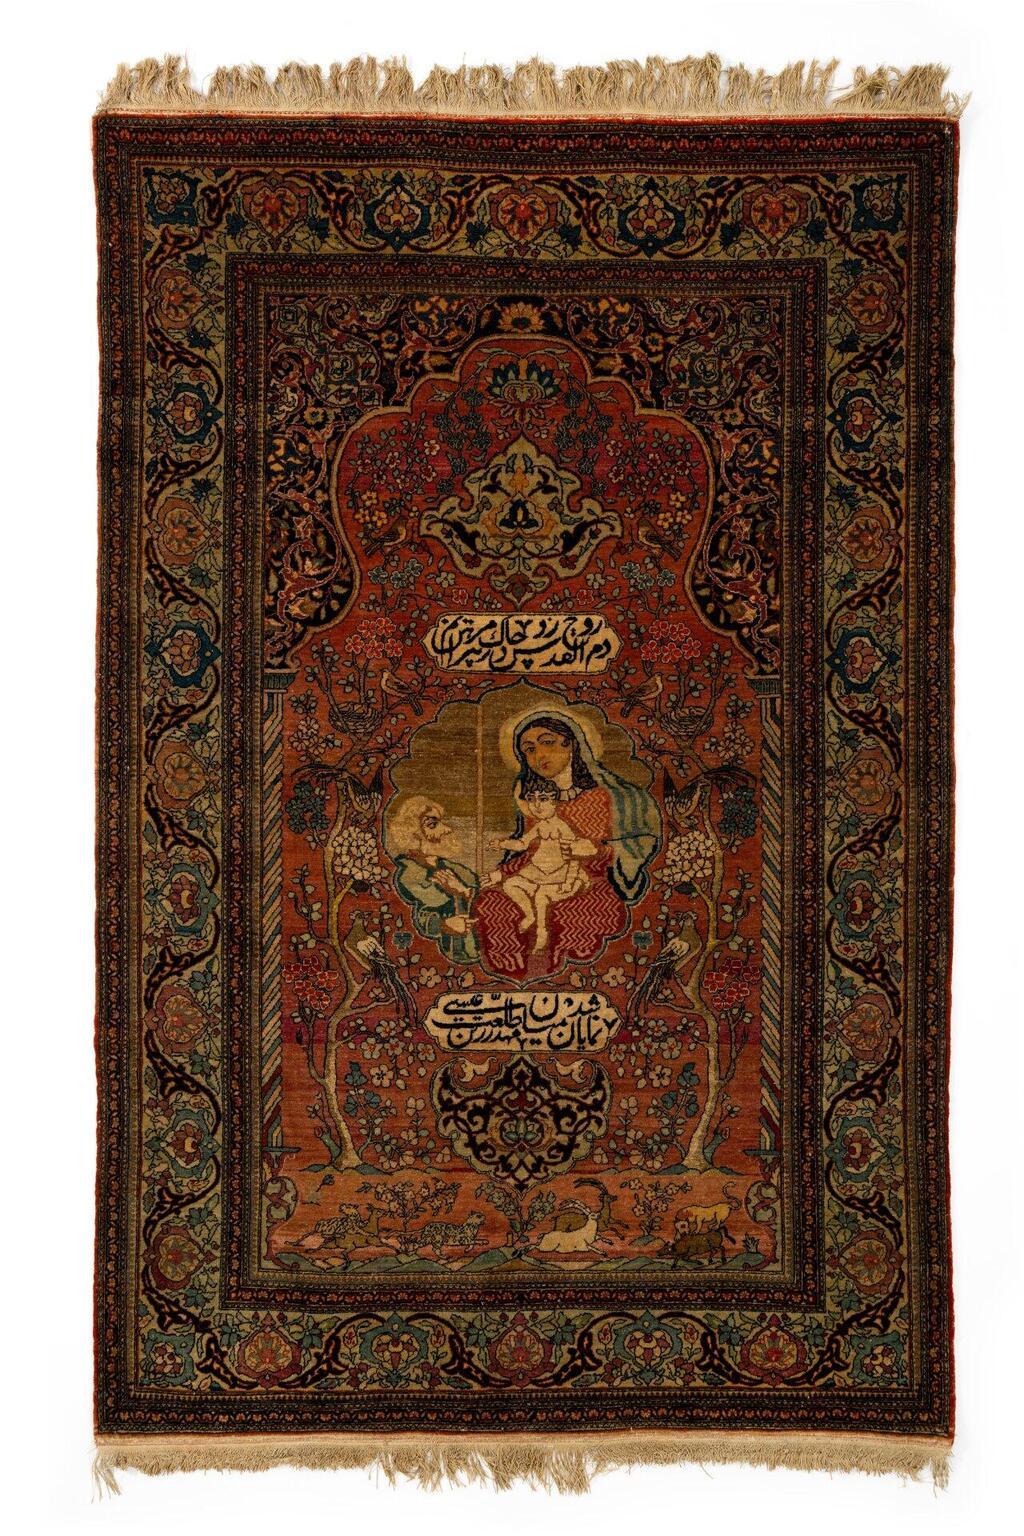 שטיח צמר בדגם שטיח תפילה עם מריה וישו. איספהאן, איראן, המאה ה-19. אוסף המוזיאון לאמנות האסלאם. 